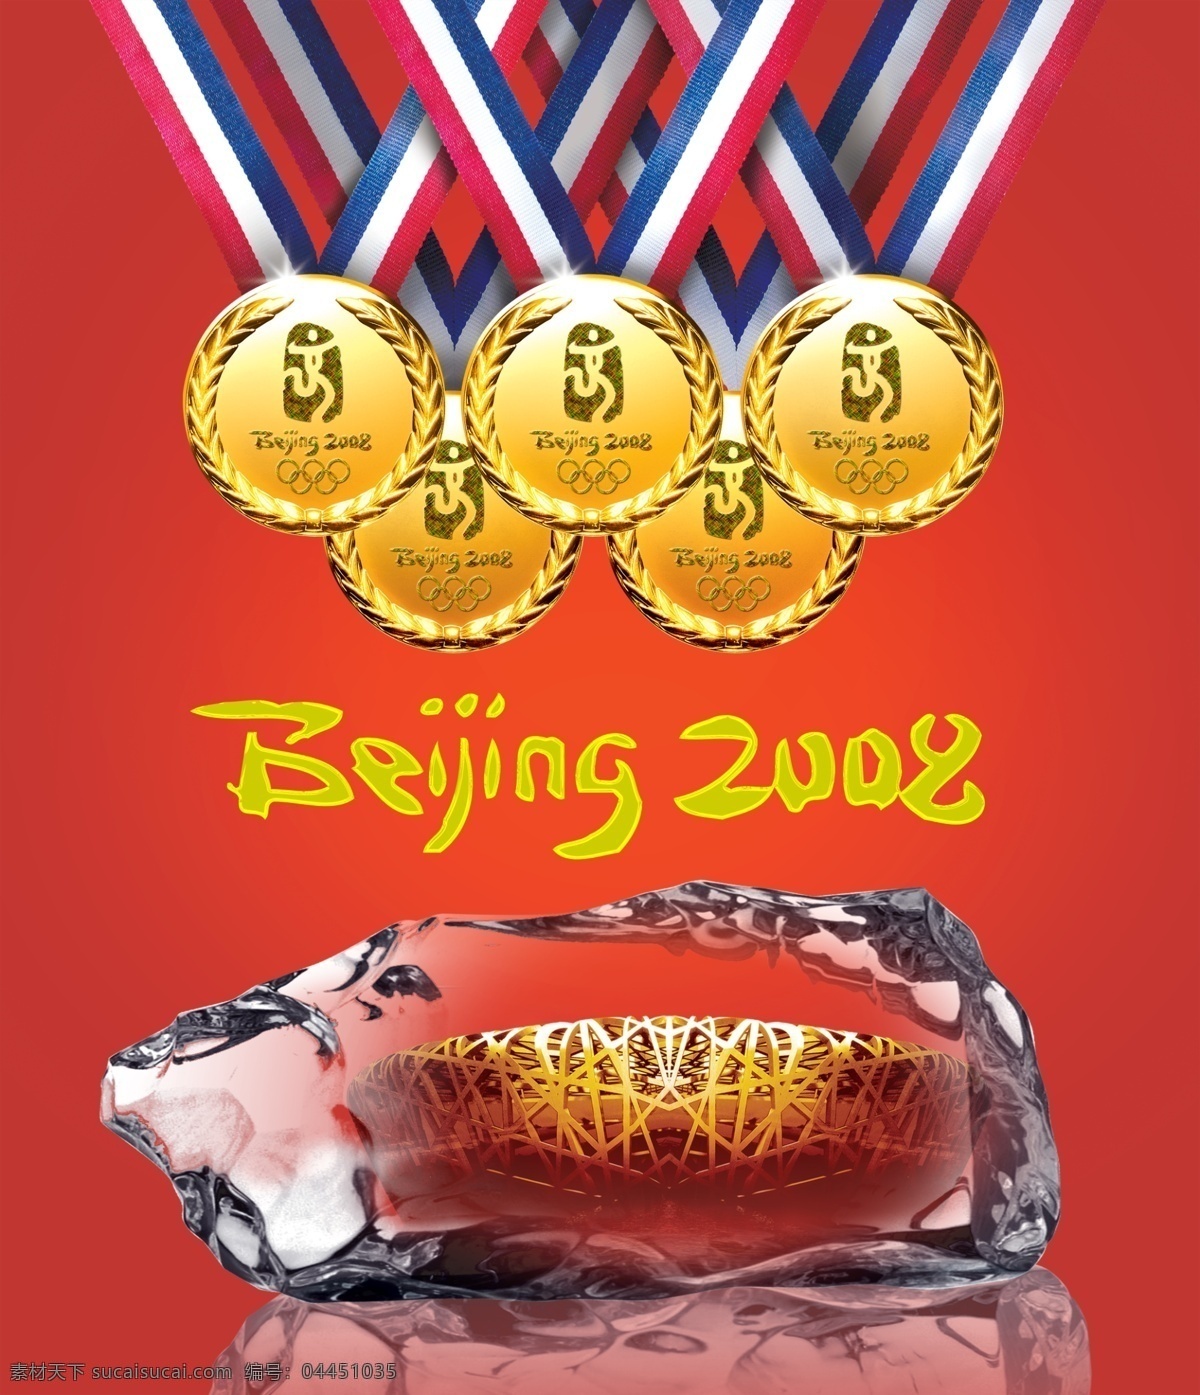 奥运 金牌 冰 中 鸟巢 冰块 北京 2008 奥运会 奥运图标 广告素材 分层 源文件库